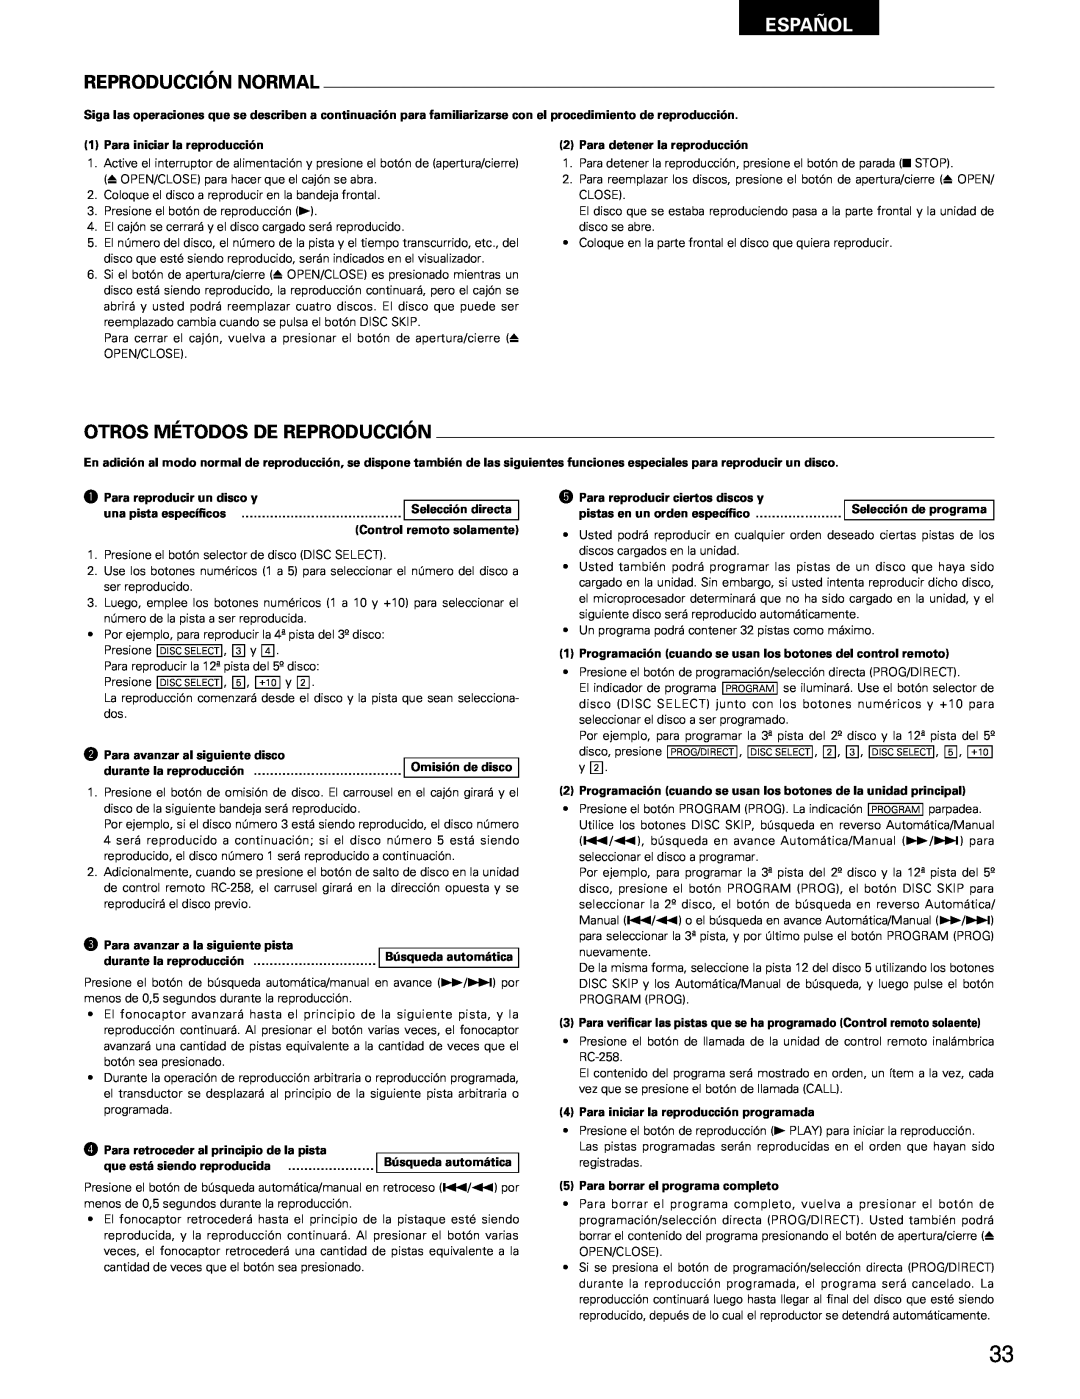 Denon DCM-65/35 manual Reproducción Normal, Otros Métodos De Reproducción, Español 